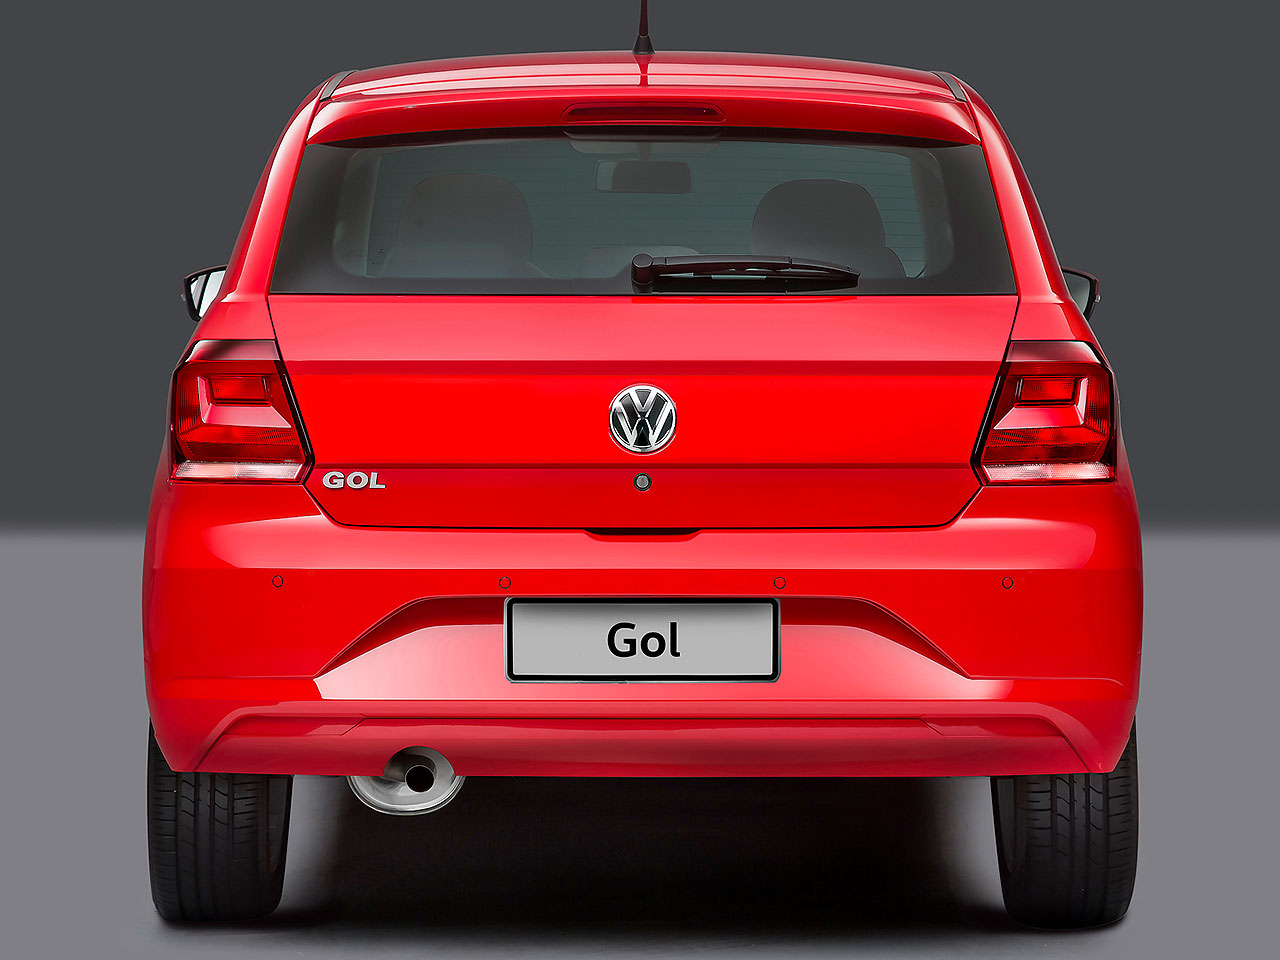 Pesquisa leva em consideração o uso de um hatch compacto, como o VW Gol